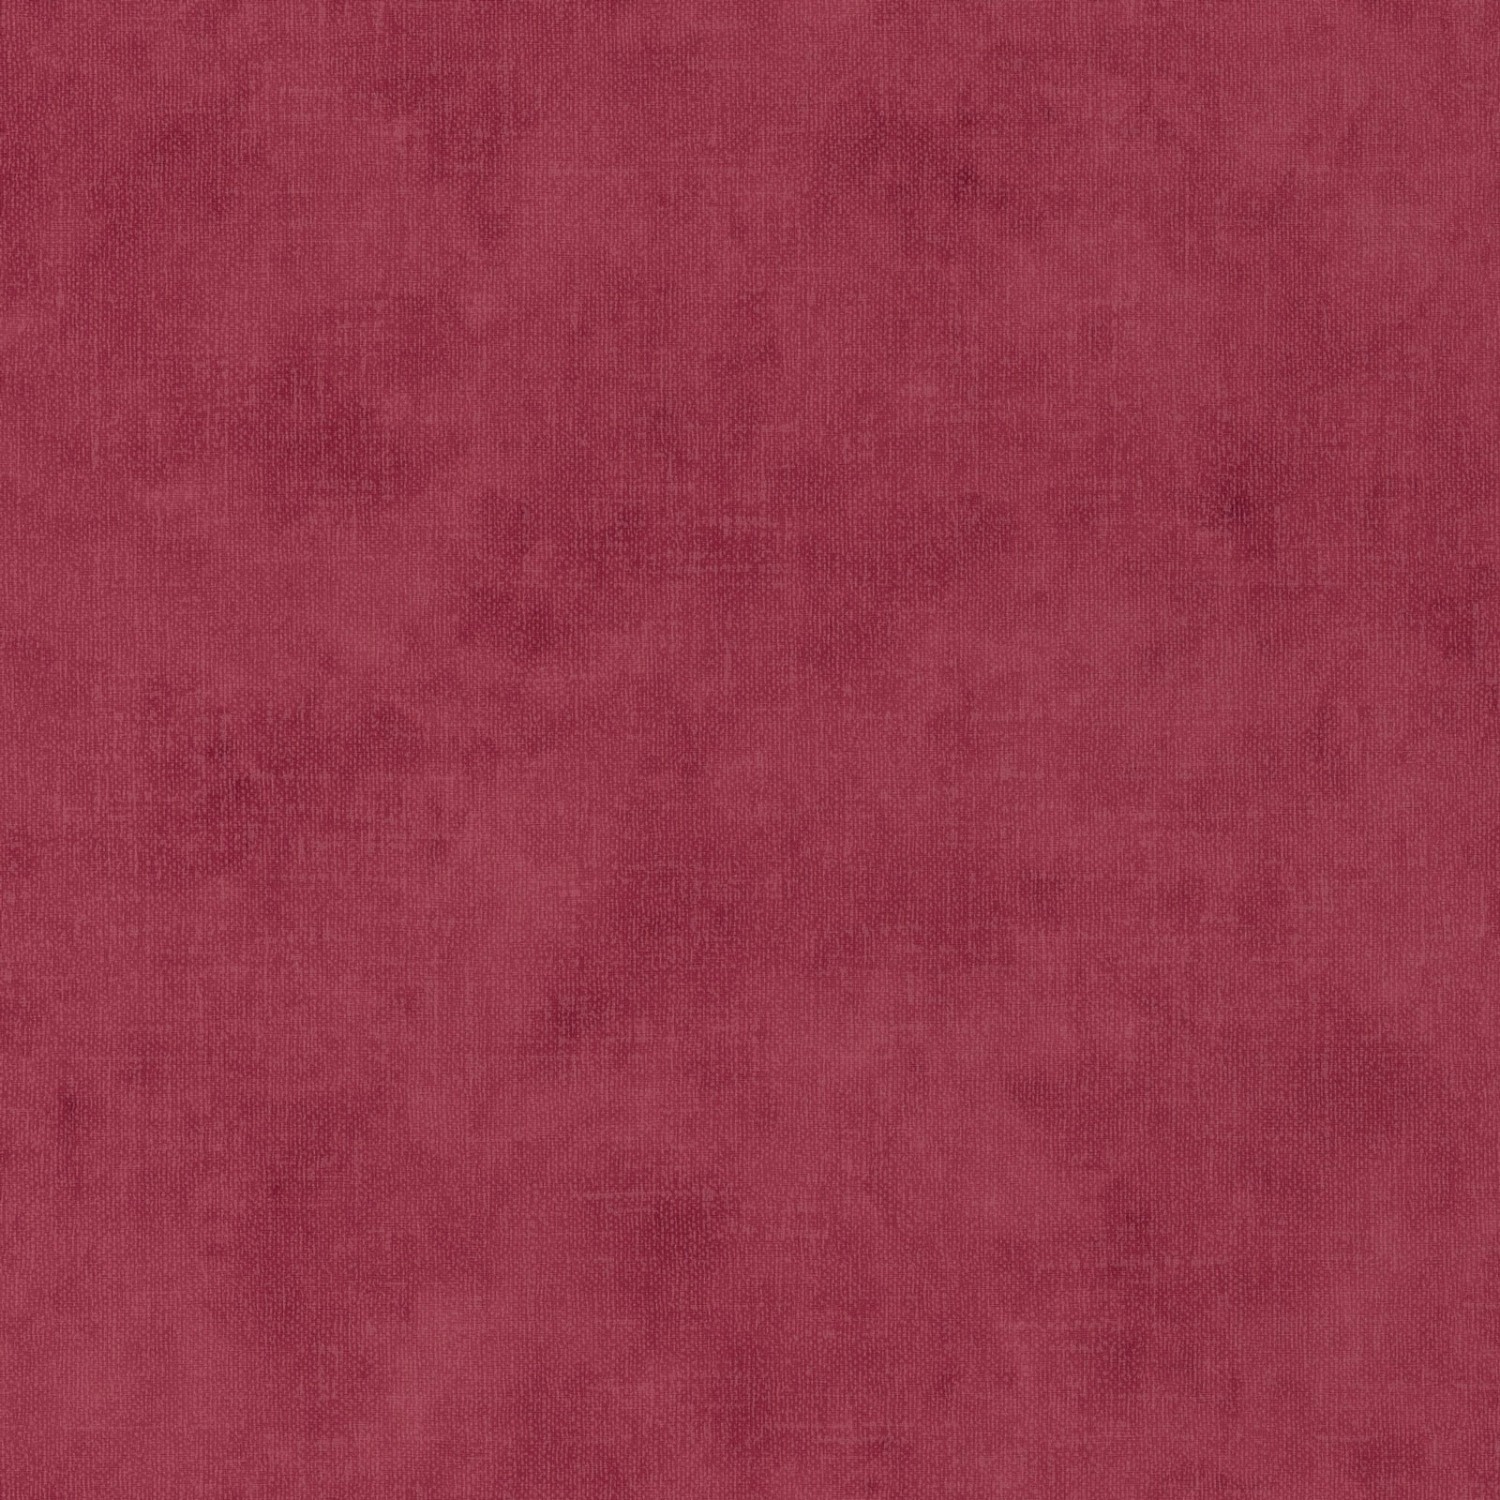 Bricoflor Uni Vliestapete in Bordeaux Rot Einfarbige Tapete in Weinrot Ideal für Esszimmer und Schlafzimmer Vlies Wandtapete mit Vinyl in Dunkelrot von Bricoflor